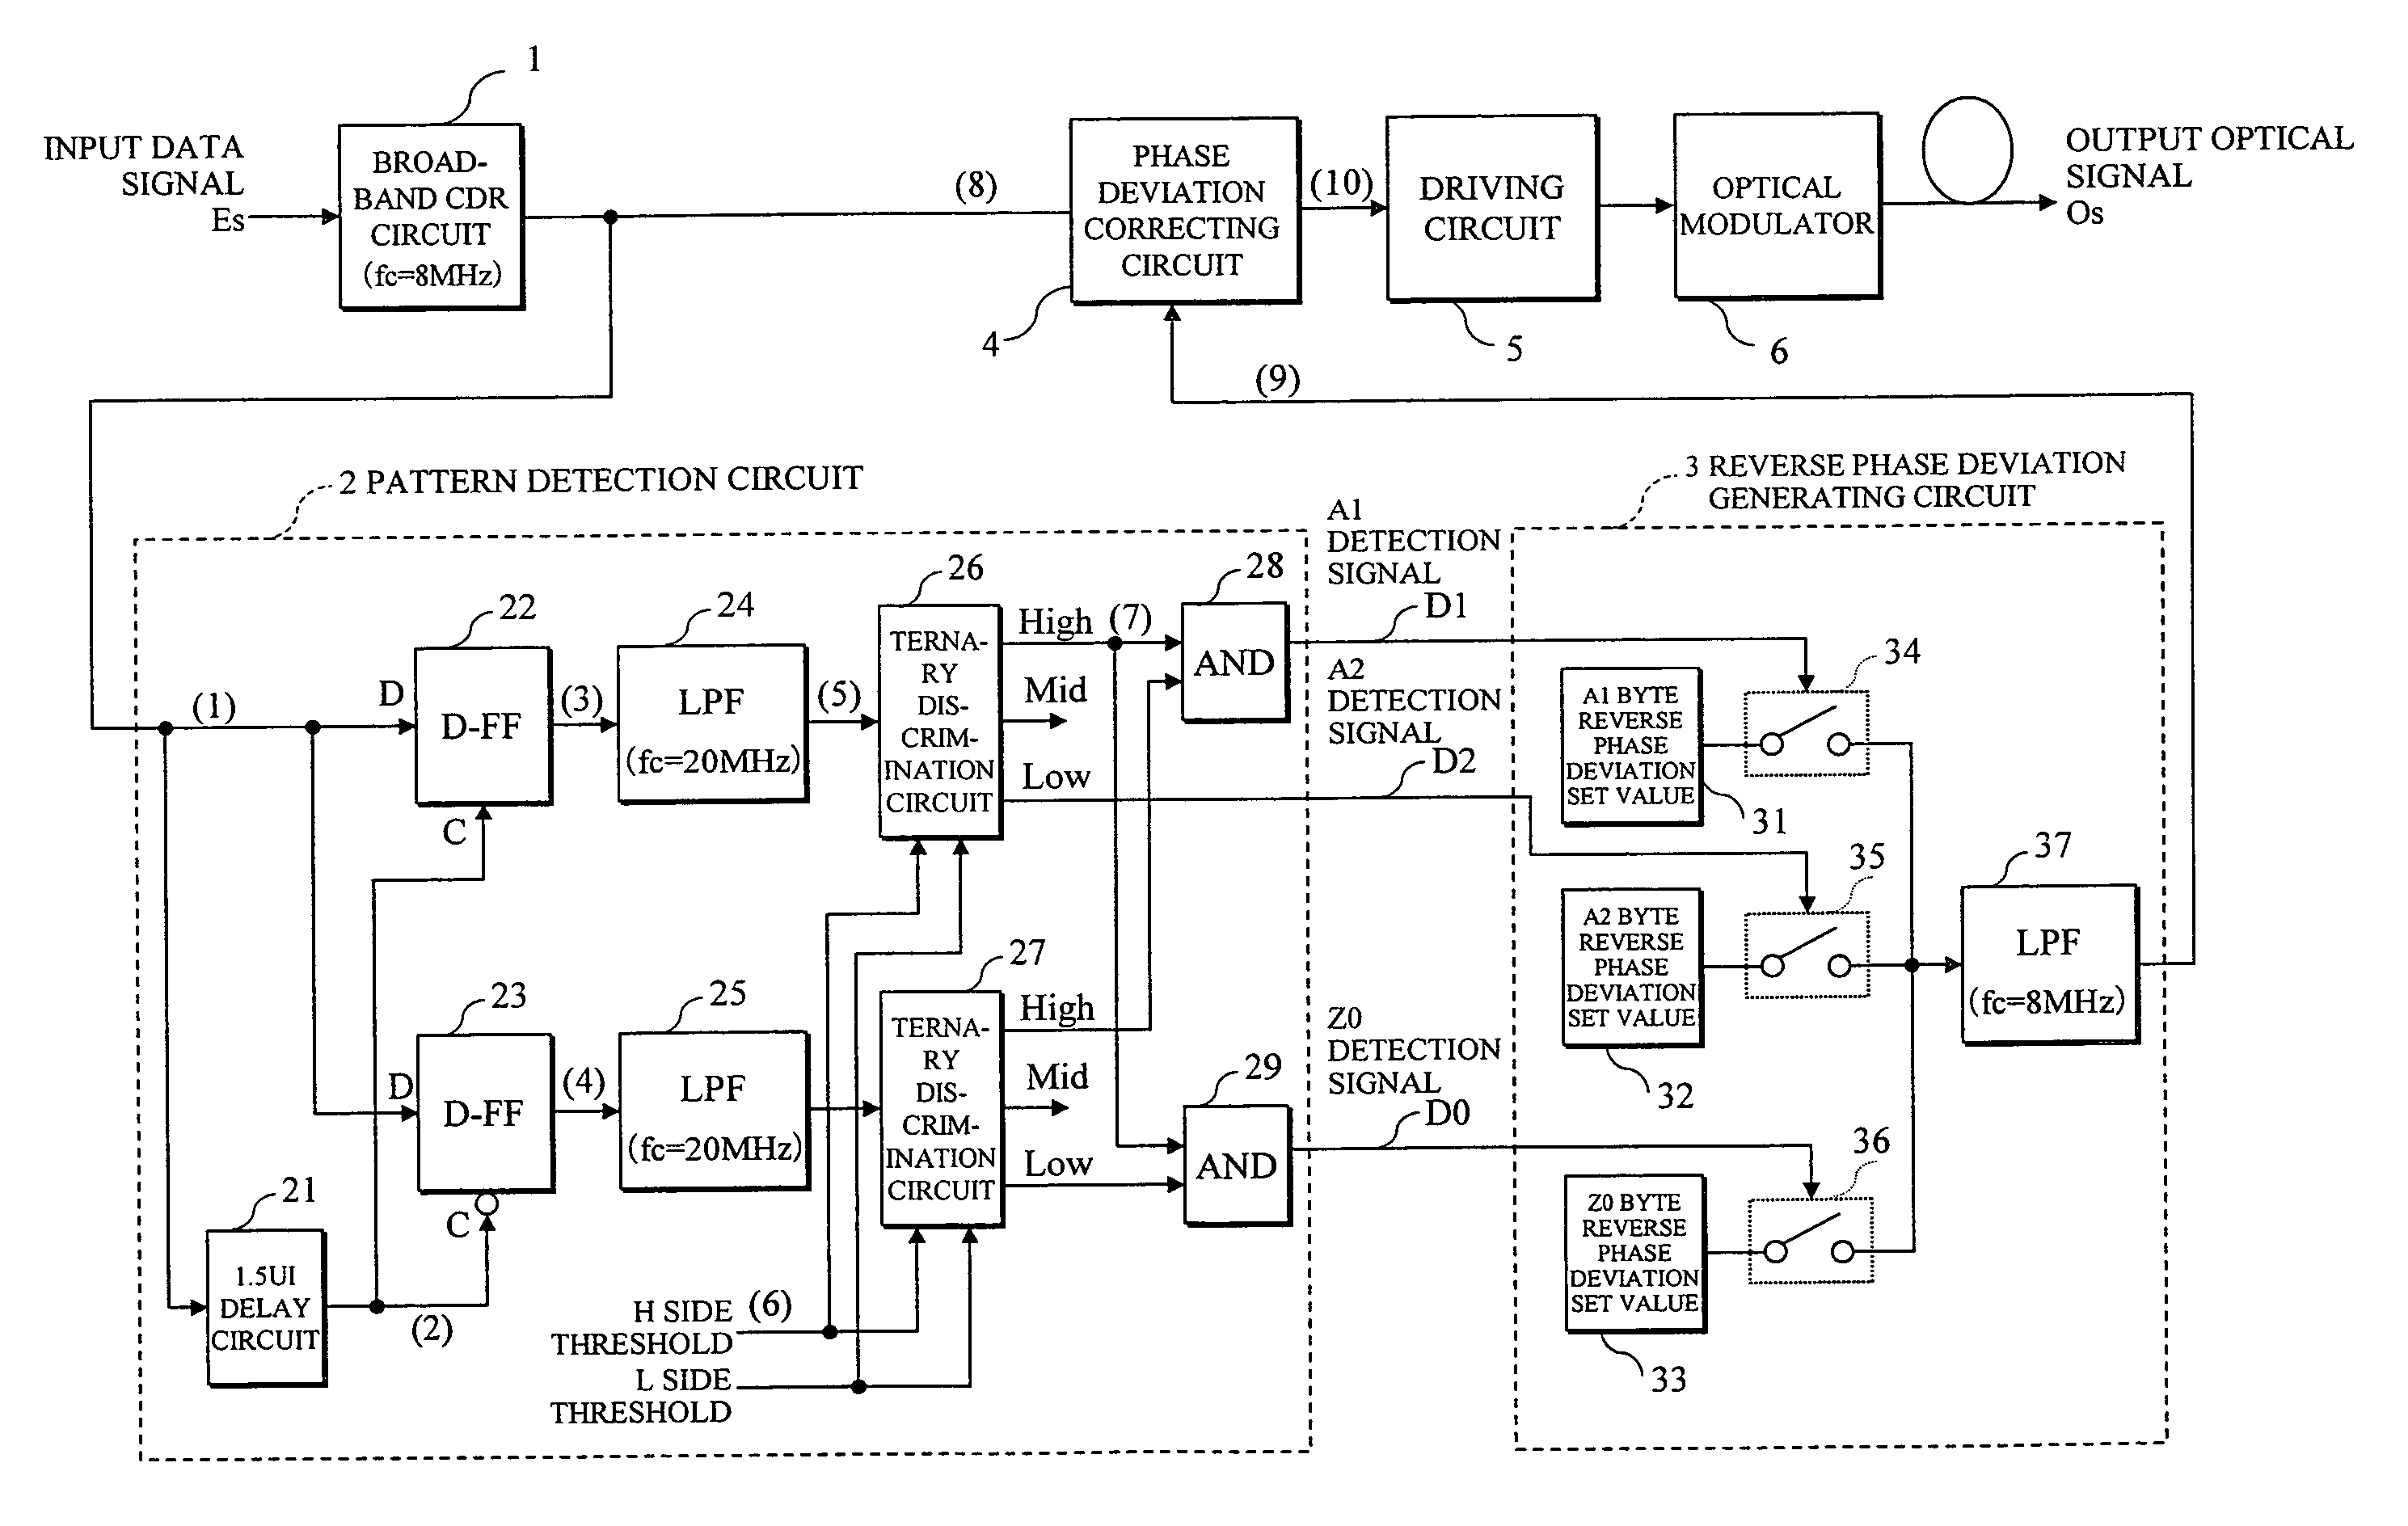 Jitter suppression circuit